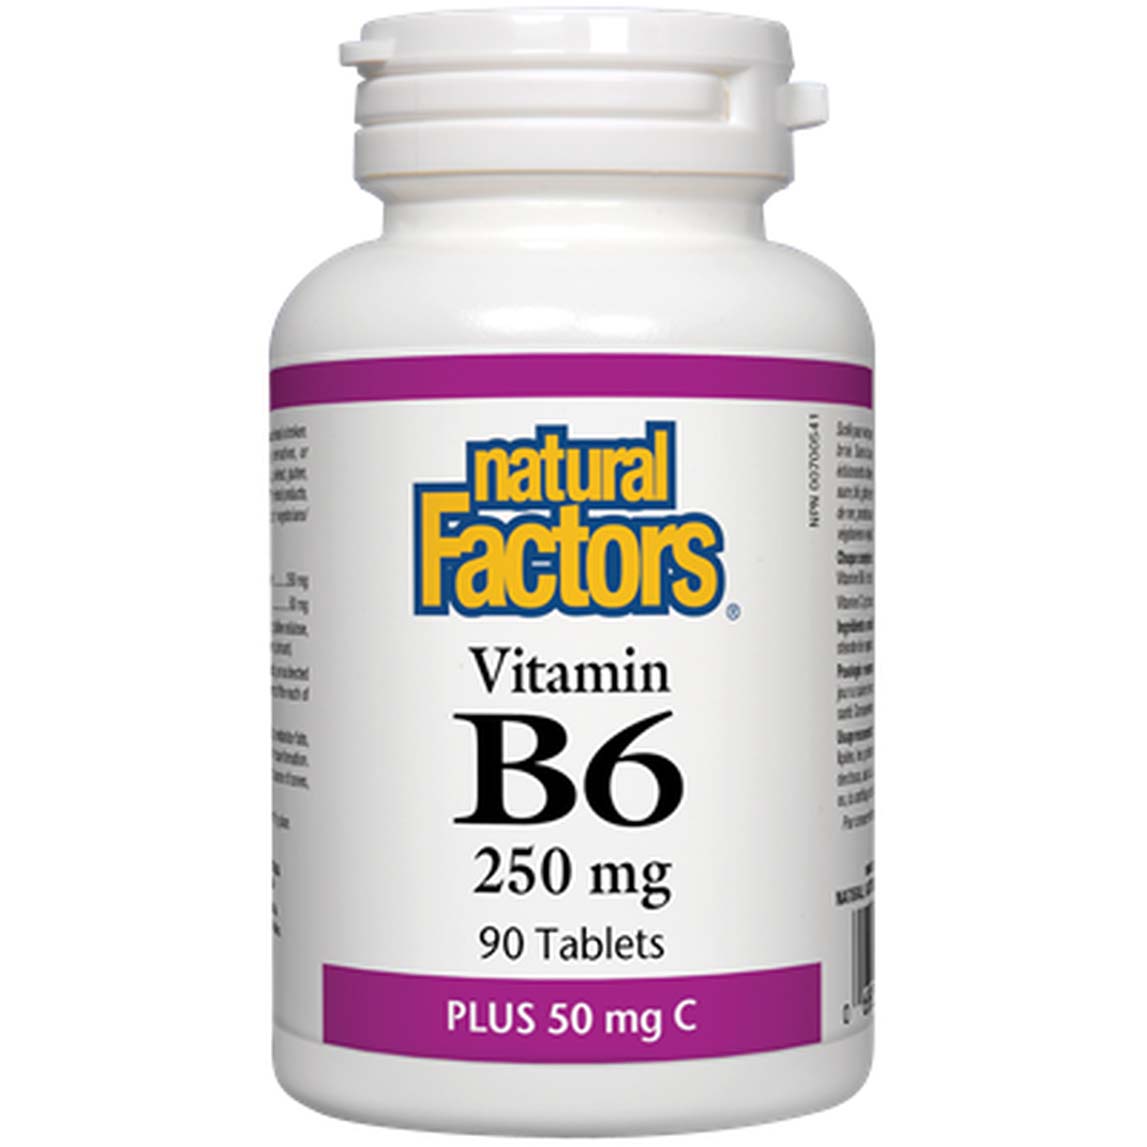 Natural Factors Vitamin B6 250 Mg Plus 50 Mg Vitamin C, 250 mg, 90 Tablets